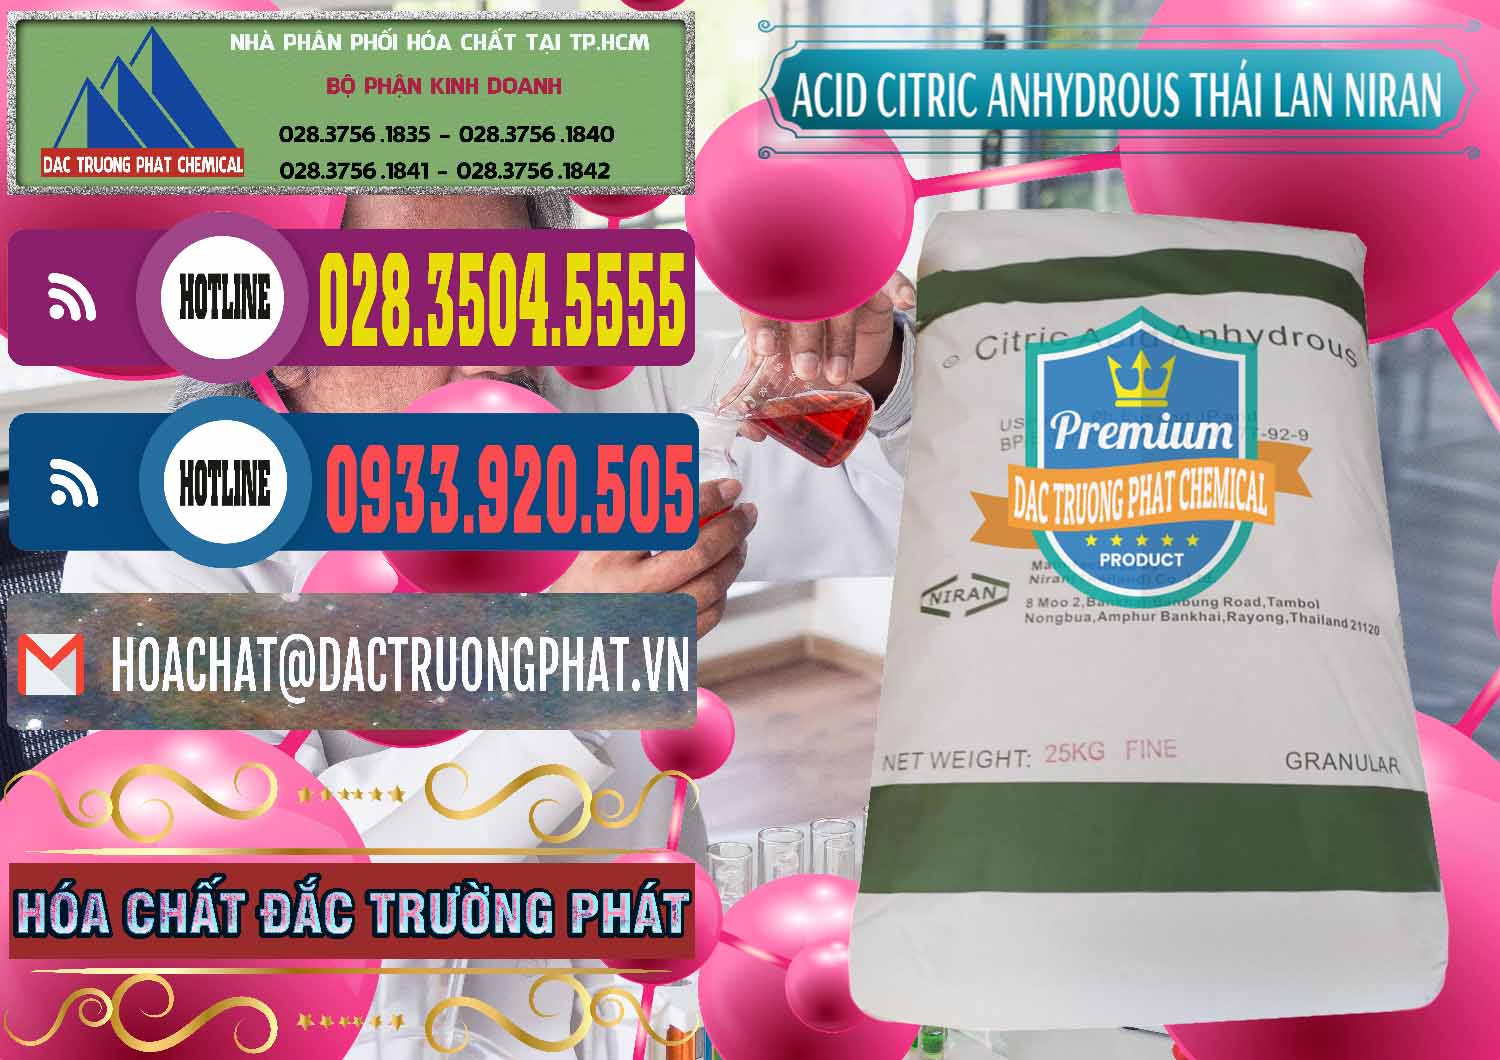 Cty chuyên phân phối _ bán Acid Citric - Axit Citric Anhydrous - Thái Lan Niran - 0231 - Đơn vị chuyên kinh doanh & cung cấp hóa chất tại TP.HCM - muabanhoachat.com.vn